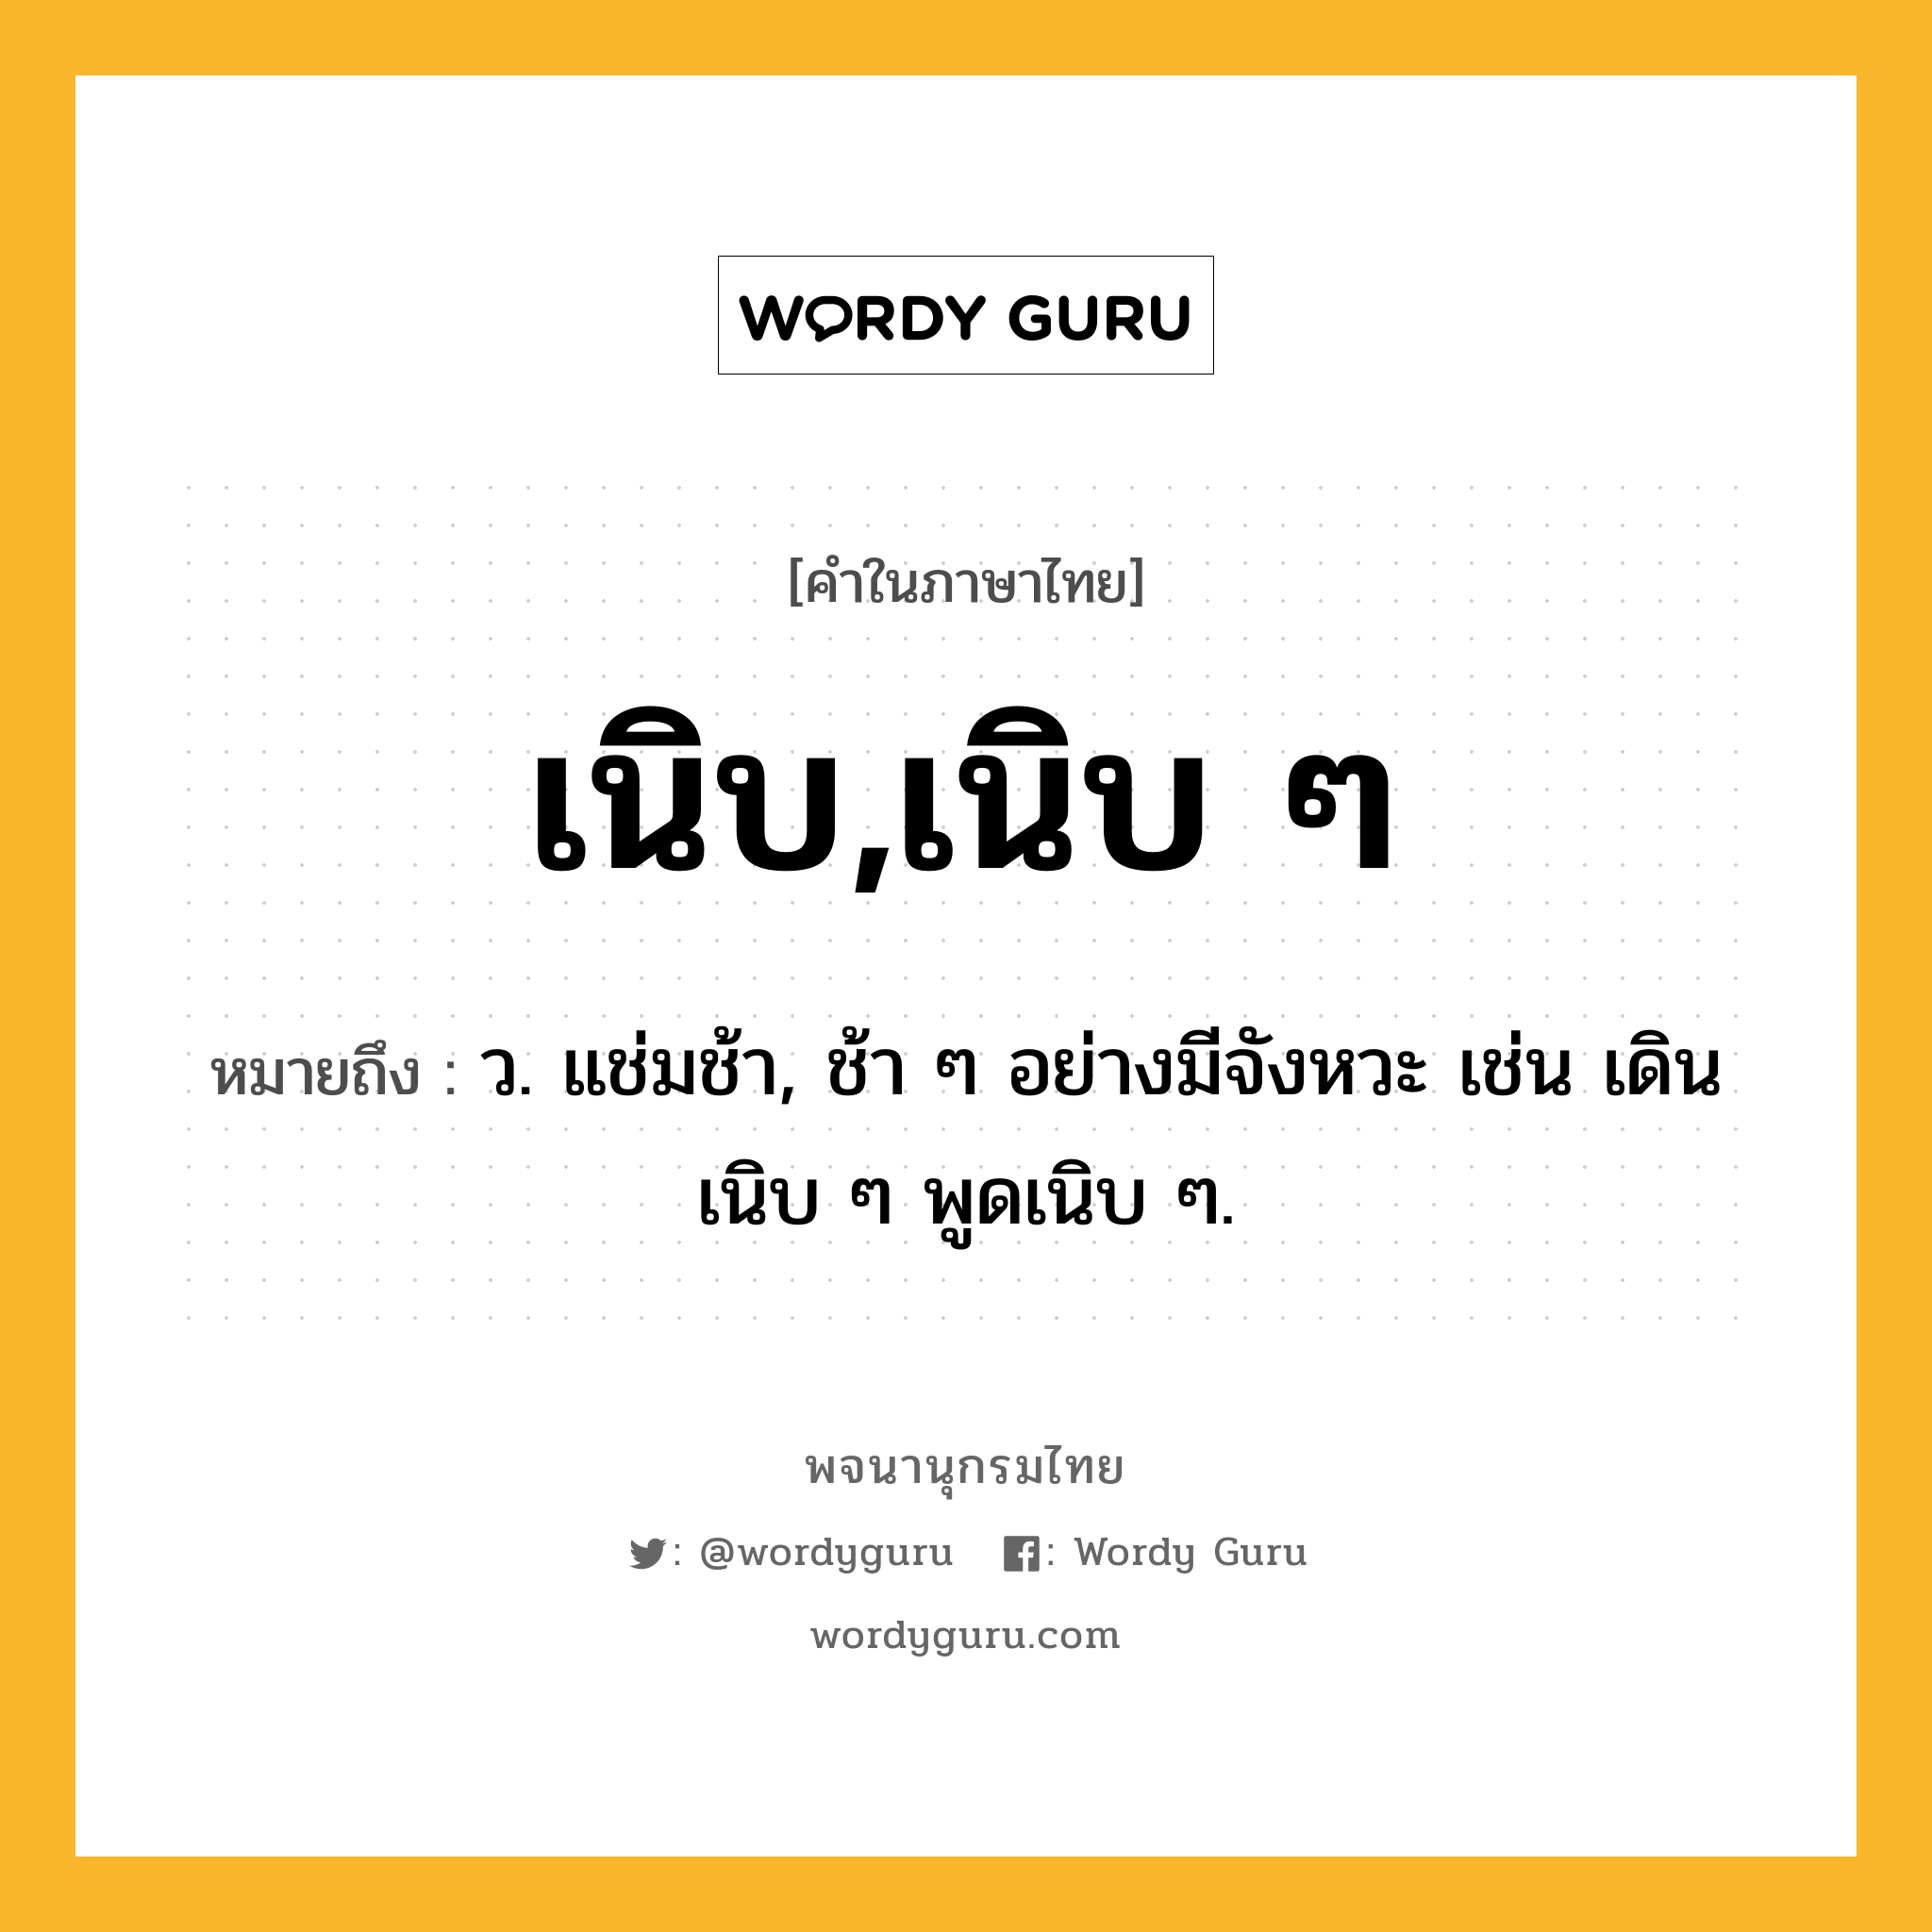 เนิบ,เนิบ ๆ ความหมาย หมายถึงอะไร?, คำในภาษาไทย เนิบ,เนิบ ๆ หมายถึง ว. แช่มช้า, ช้า ๆ อย่างมีจังหวะ เช่น เดินเนิบ ๆ พูดเนิบ ๆ.